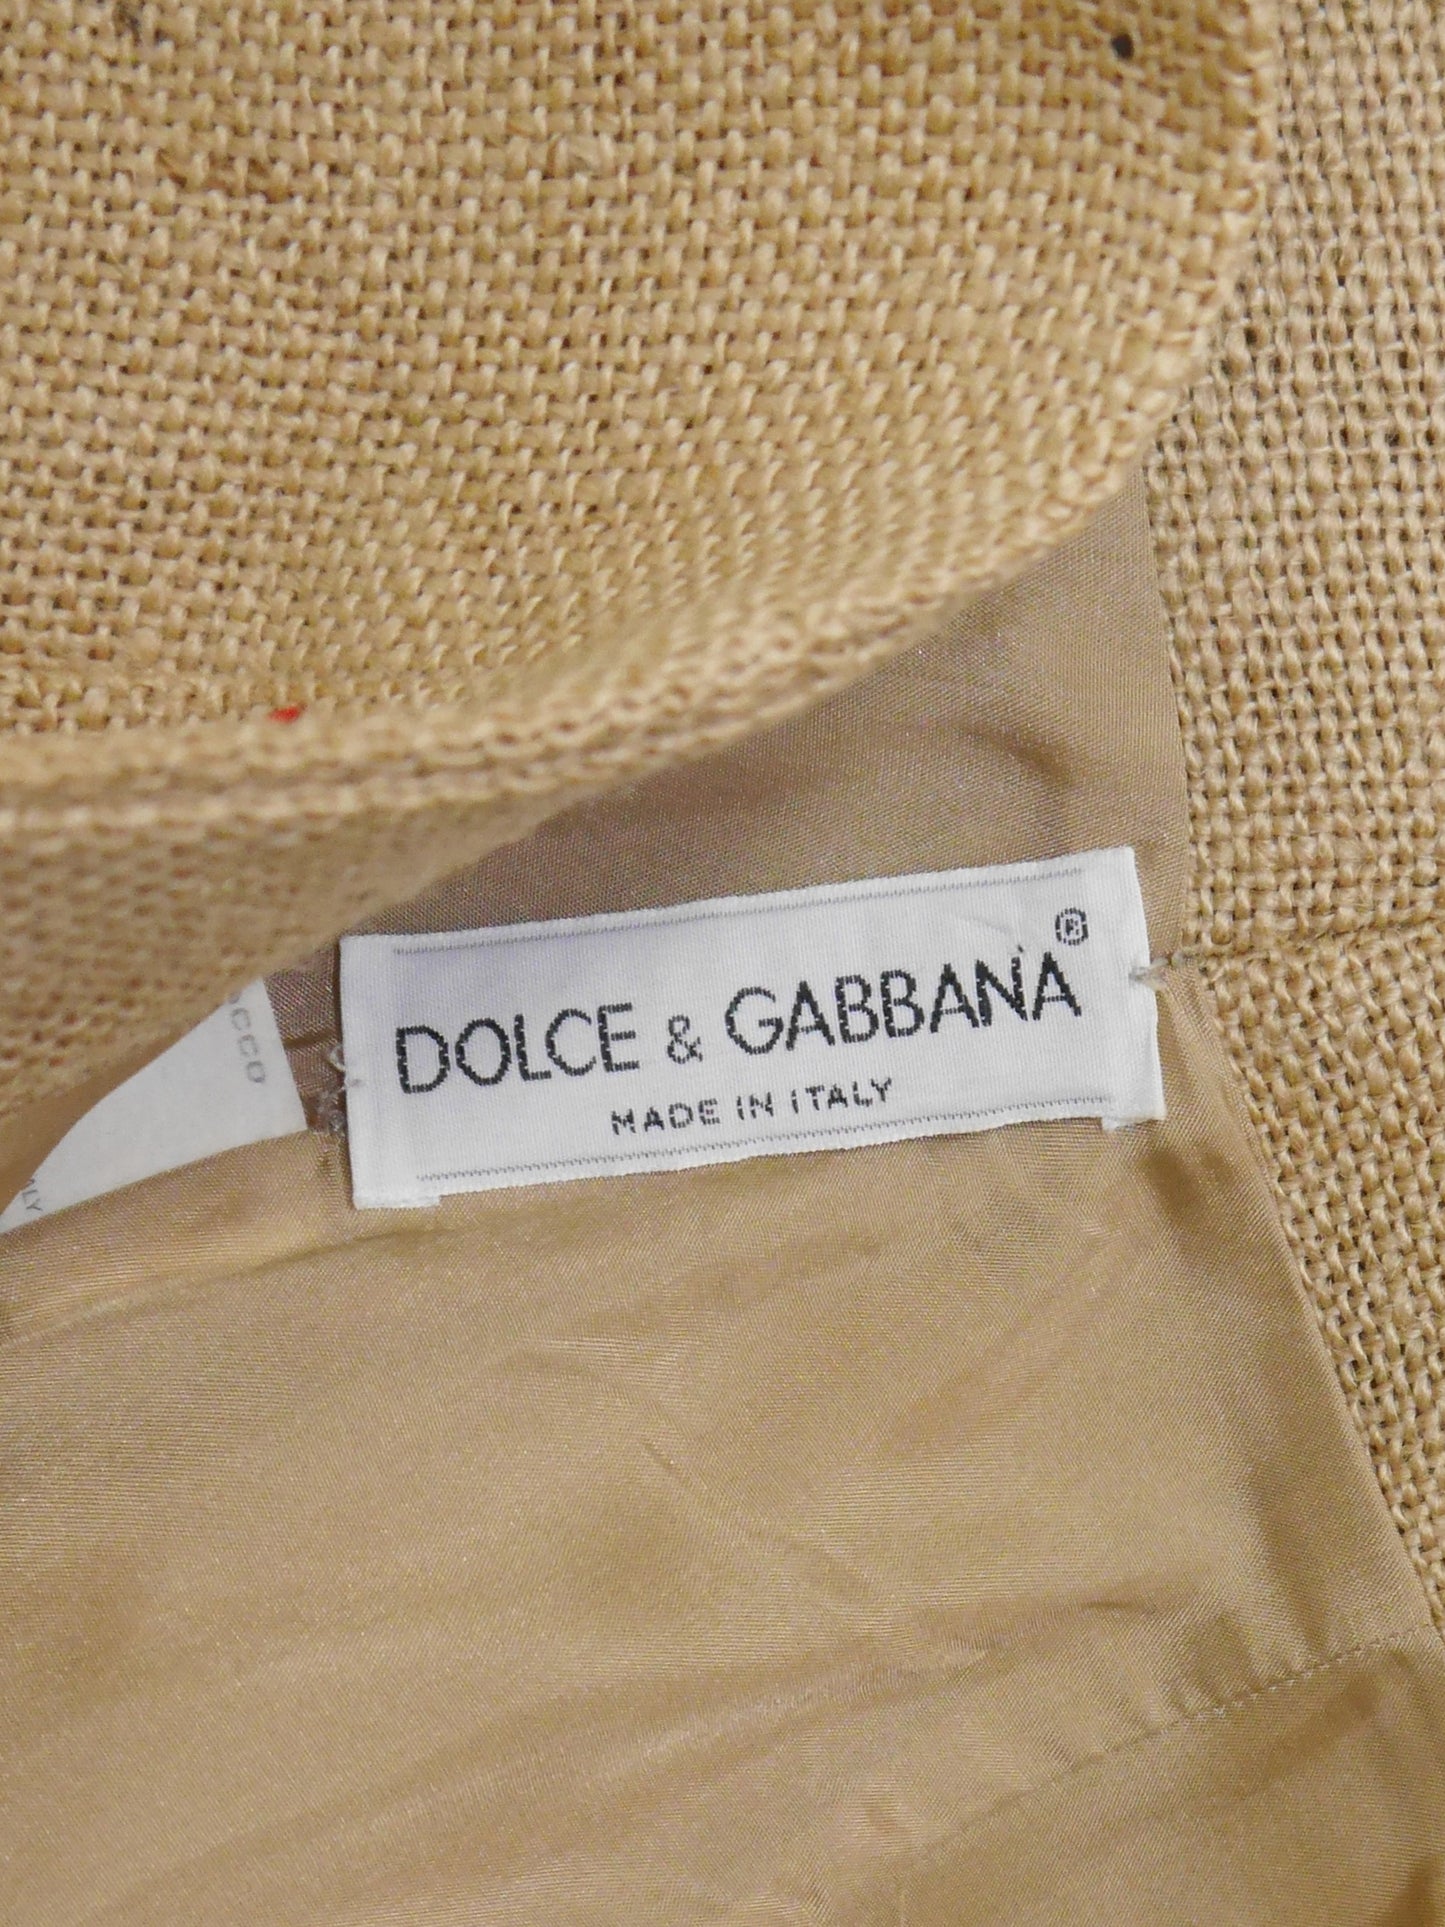 DOLCE & GABBANA Spring 1992 Vintage Jute Bustier Top & Hot Pants Set